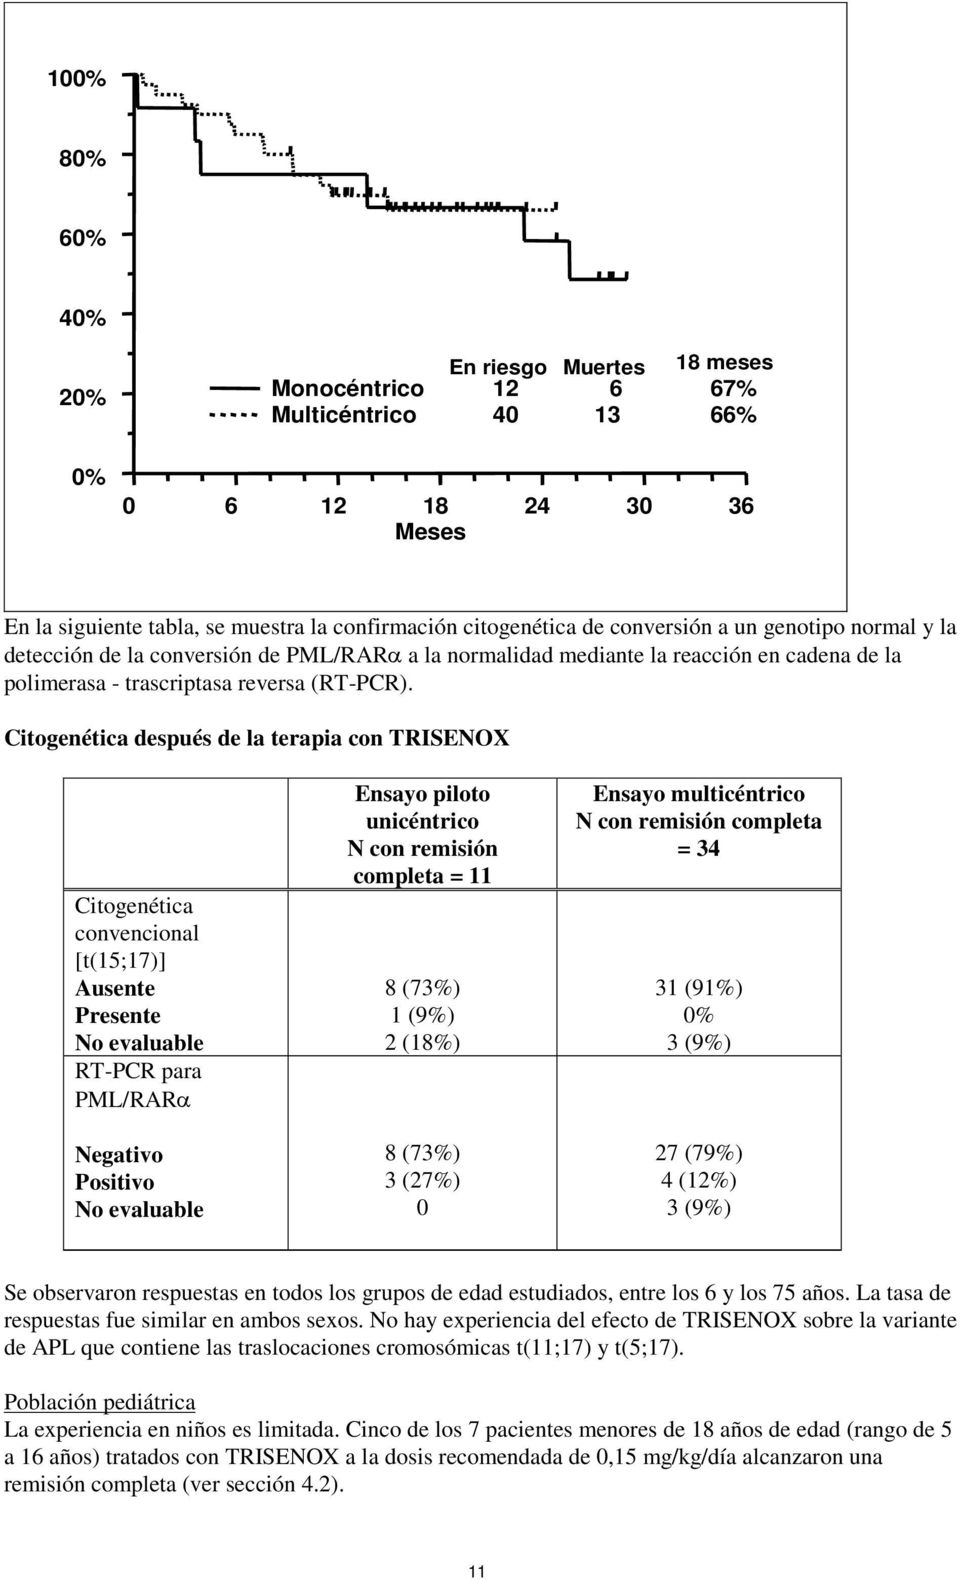 Citogenética después de la terapia con TRISENOX Citogenética convencional [t(15;17)] Ausente Presente No evaluable RT-PCR para PML/RARα Negativo Positivo No evaluable Ensayo piloto unicéntrico N con